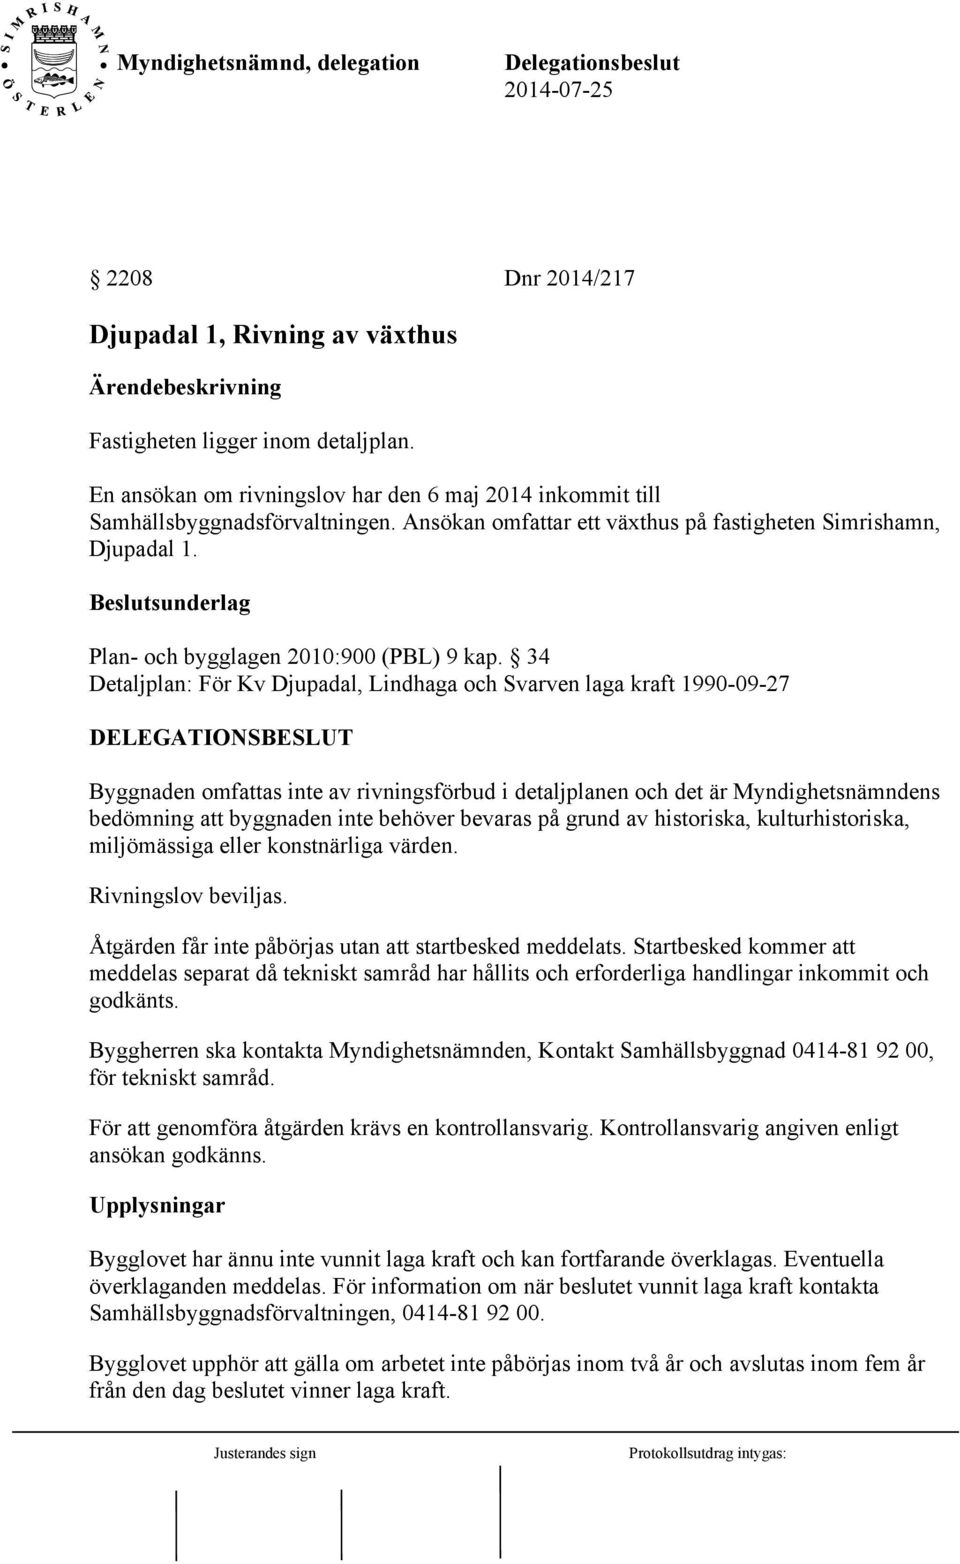 34 Detaljplan: För Kv Djupadal, Lindhaga och Svarven laga kraft 1990-09-27 Byggnaden omfattas inte av rivningsförbud i detaljplanen och det är Myndighetsnämndens bedömning att byggnaden inte behöver